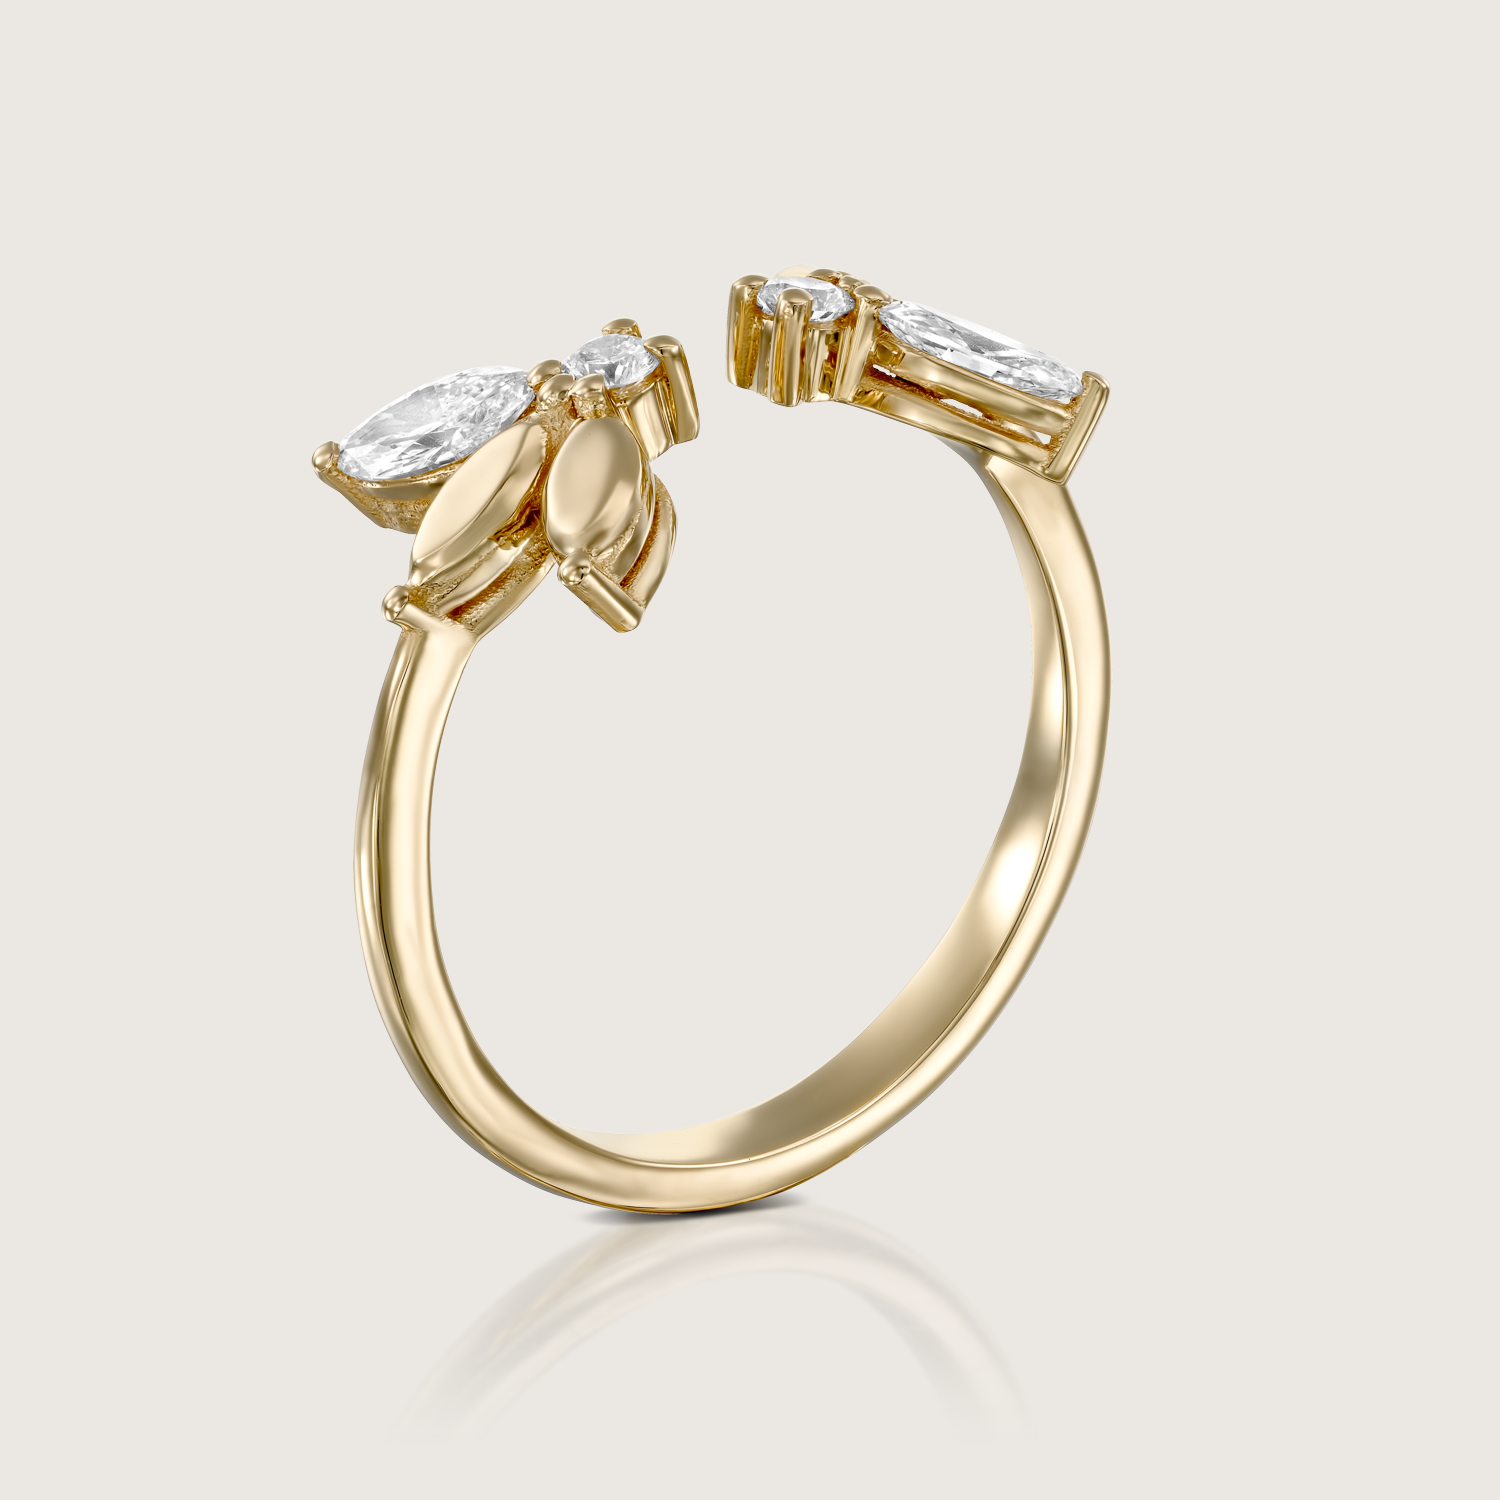 Enlarged Jeanne Bécu Open Gold Ring